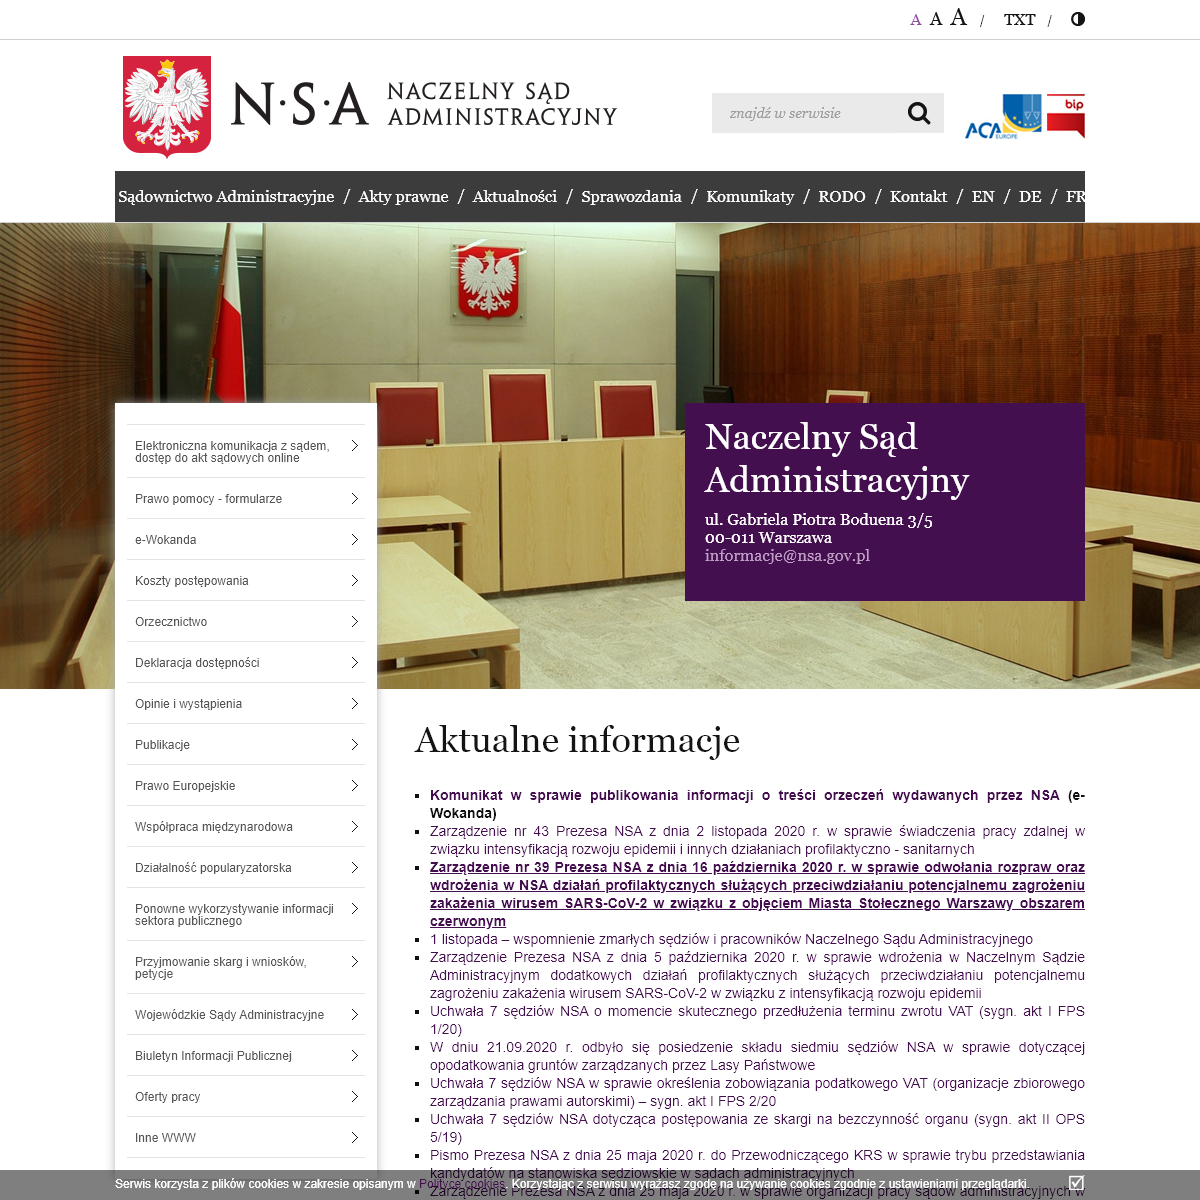 A complete backup of nsa.gov.pl